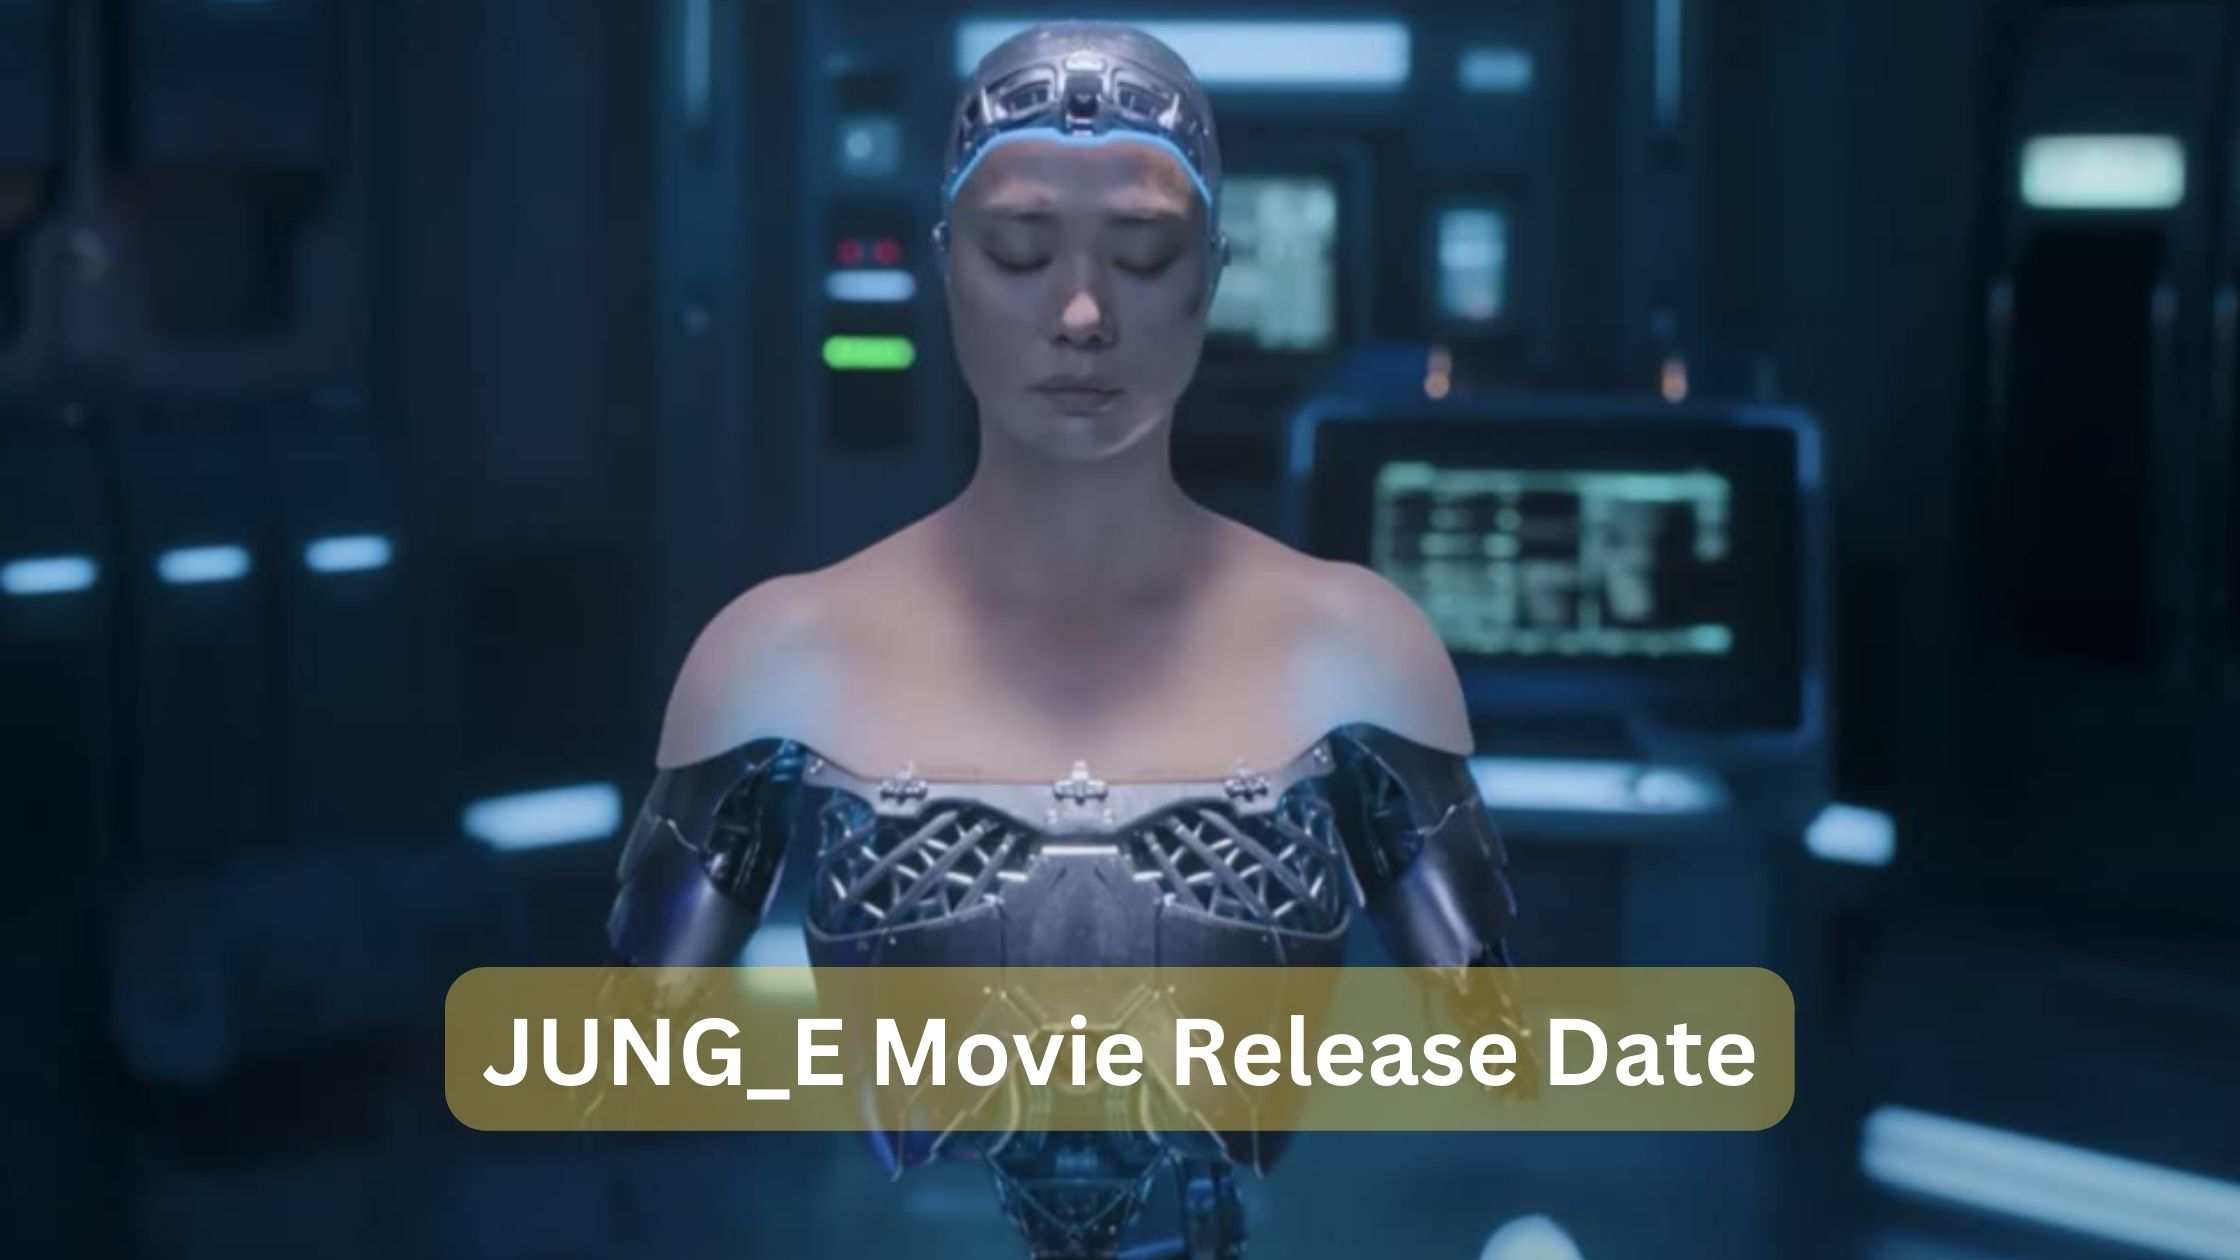 JUNG_E movie release date